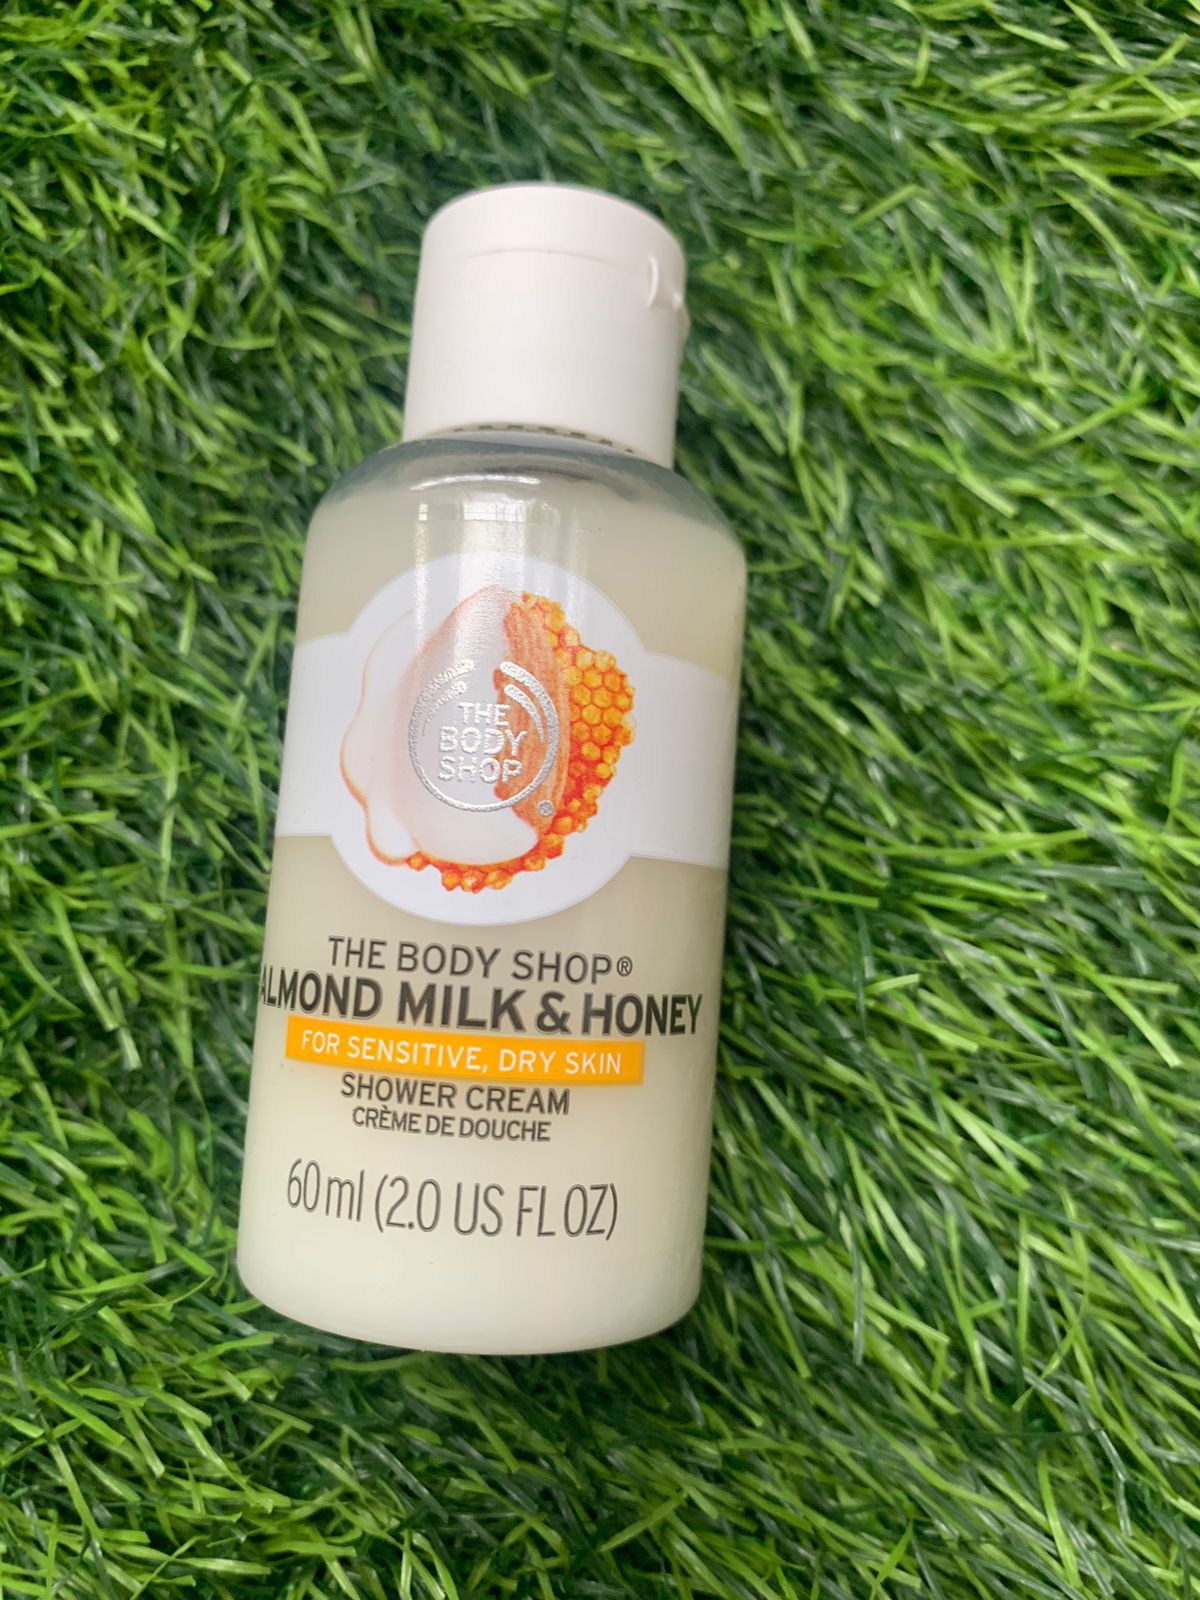 Almond Milk Shower Cream